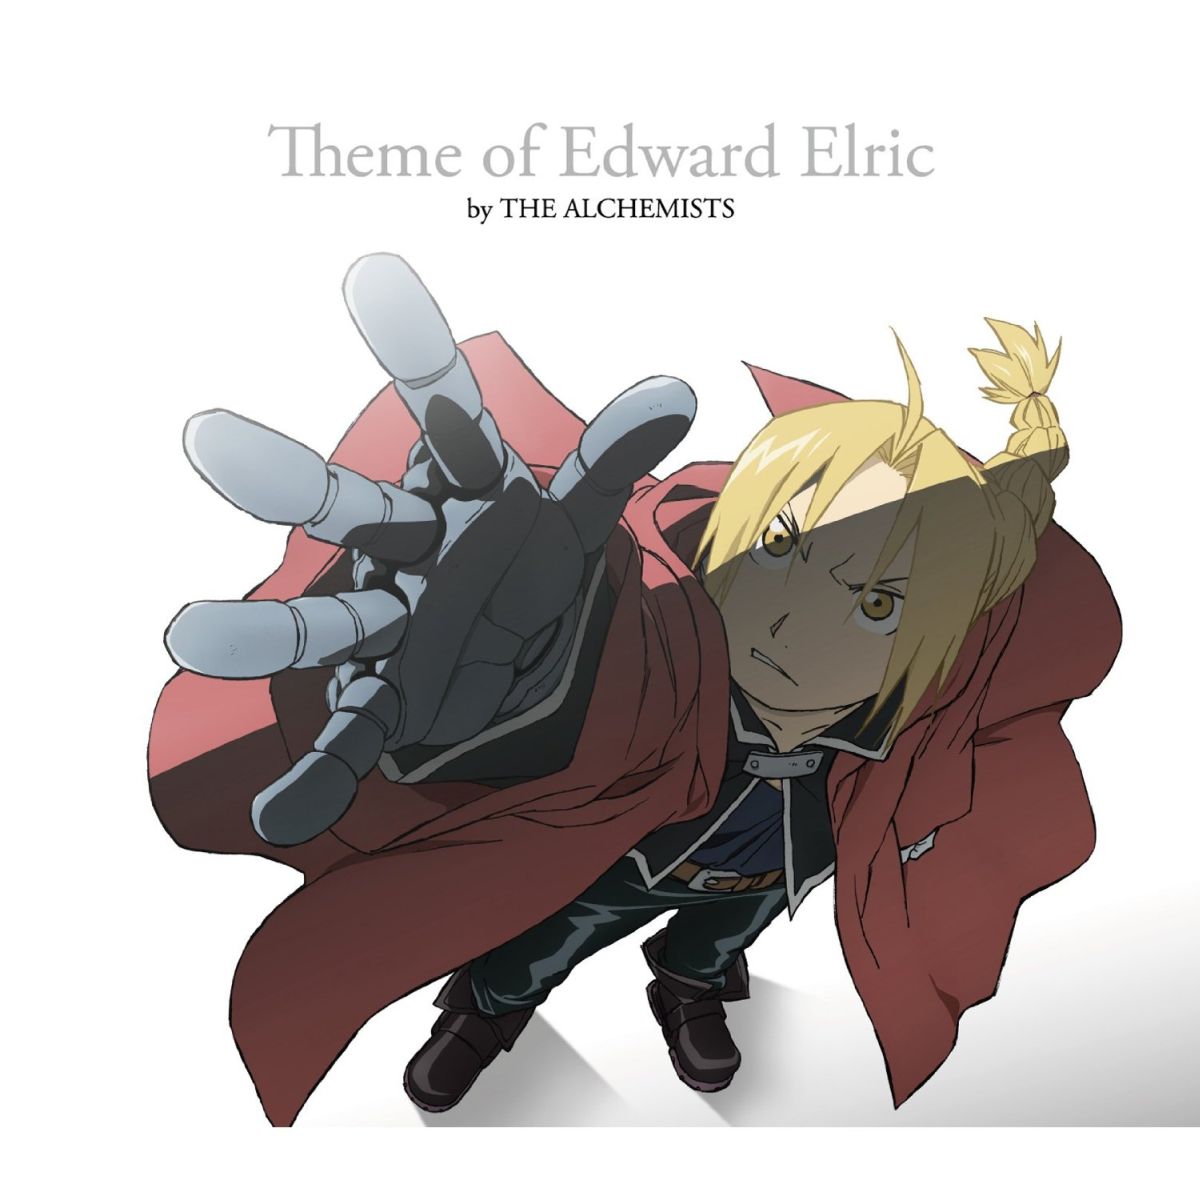 鋼の錬金術師 FULLMETAL ALCHEMIST Theme of Edward Elric by THE ALCHEMISTS画像